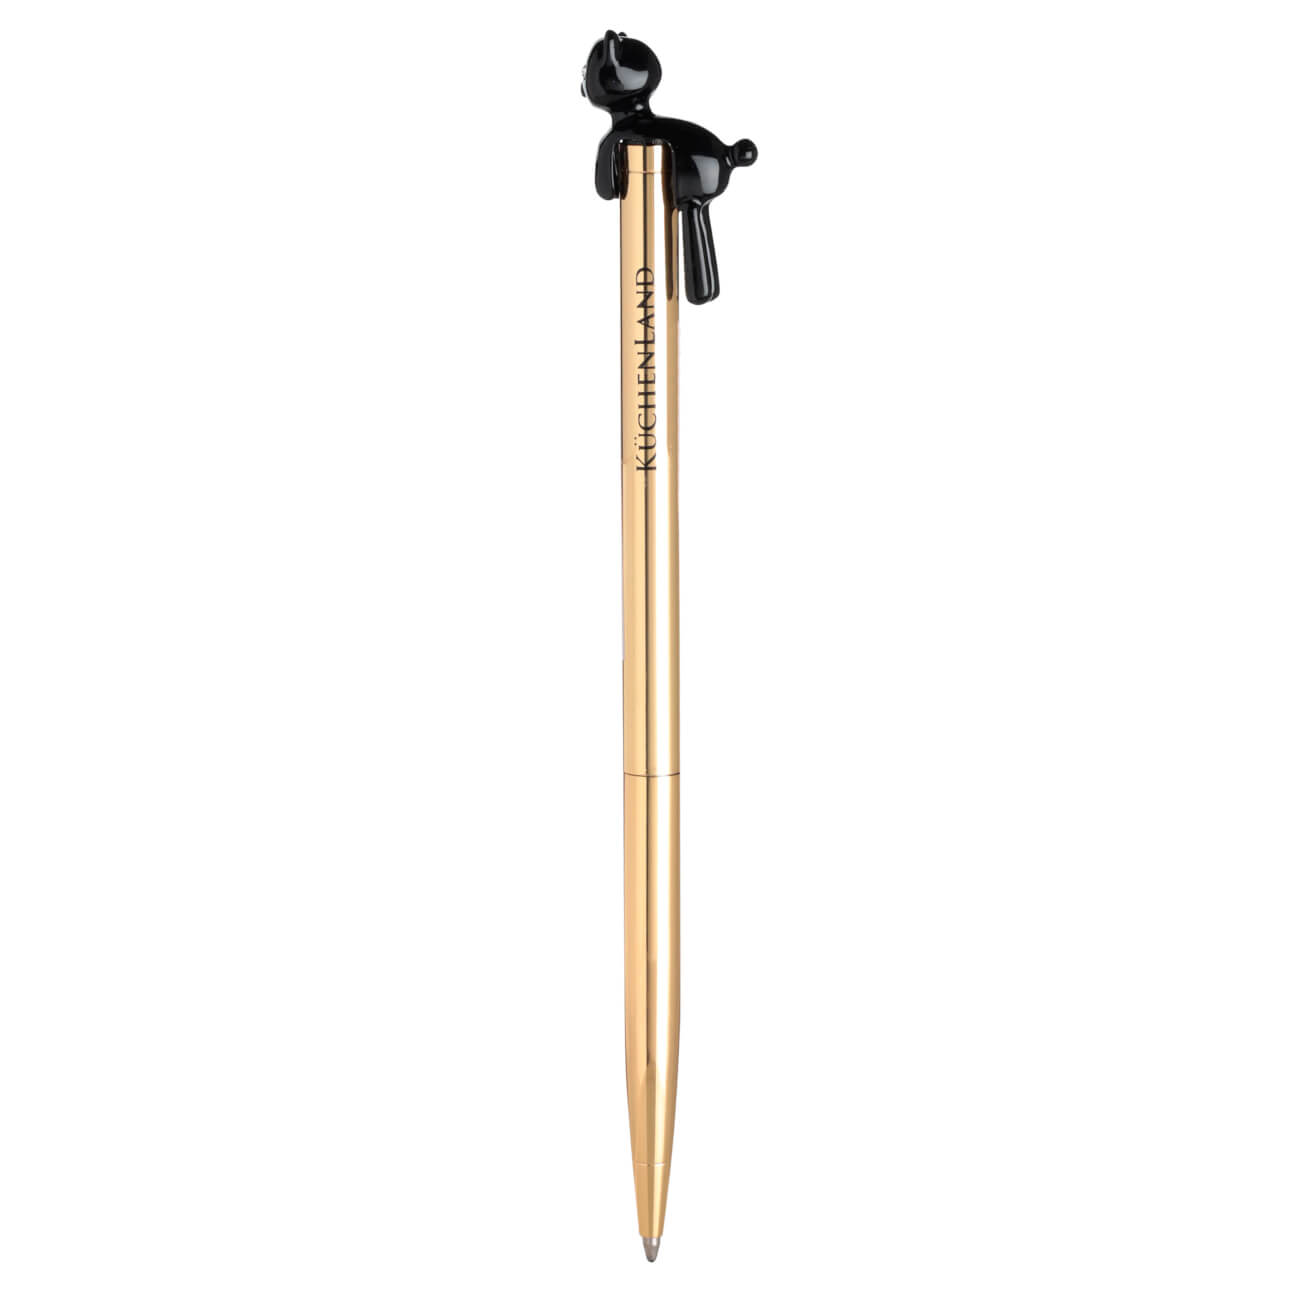 Ручка шариковая, 14 см, с фигуркой, металл, золотистая, Черный кот, Draw figure ручка скоба cappio pc183 96 мм бронза